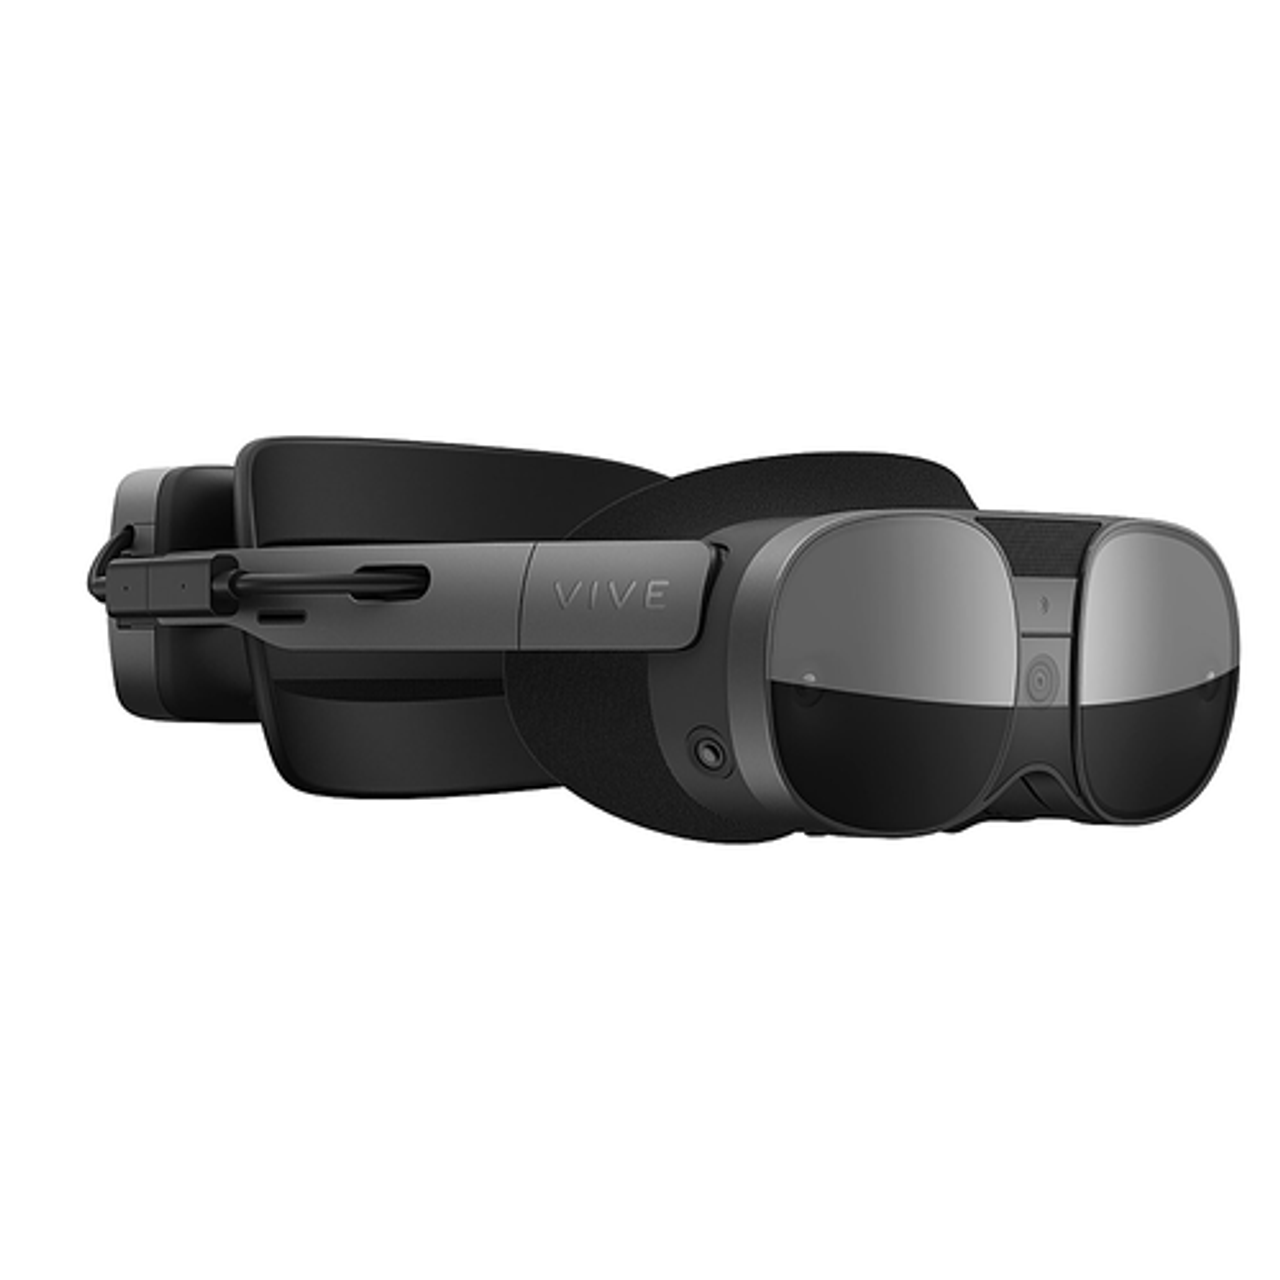 HTC - VIVE XR Elite Virtual Reality Set - Black/Dark Gray